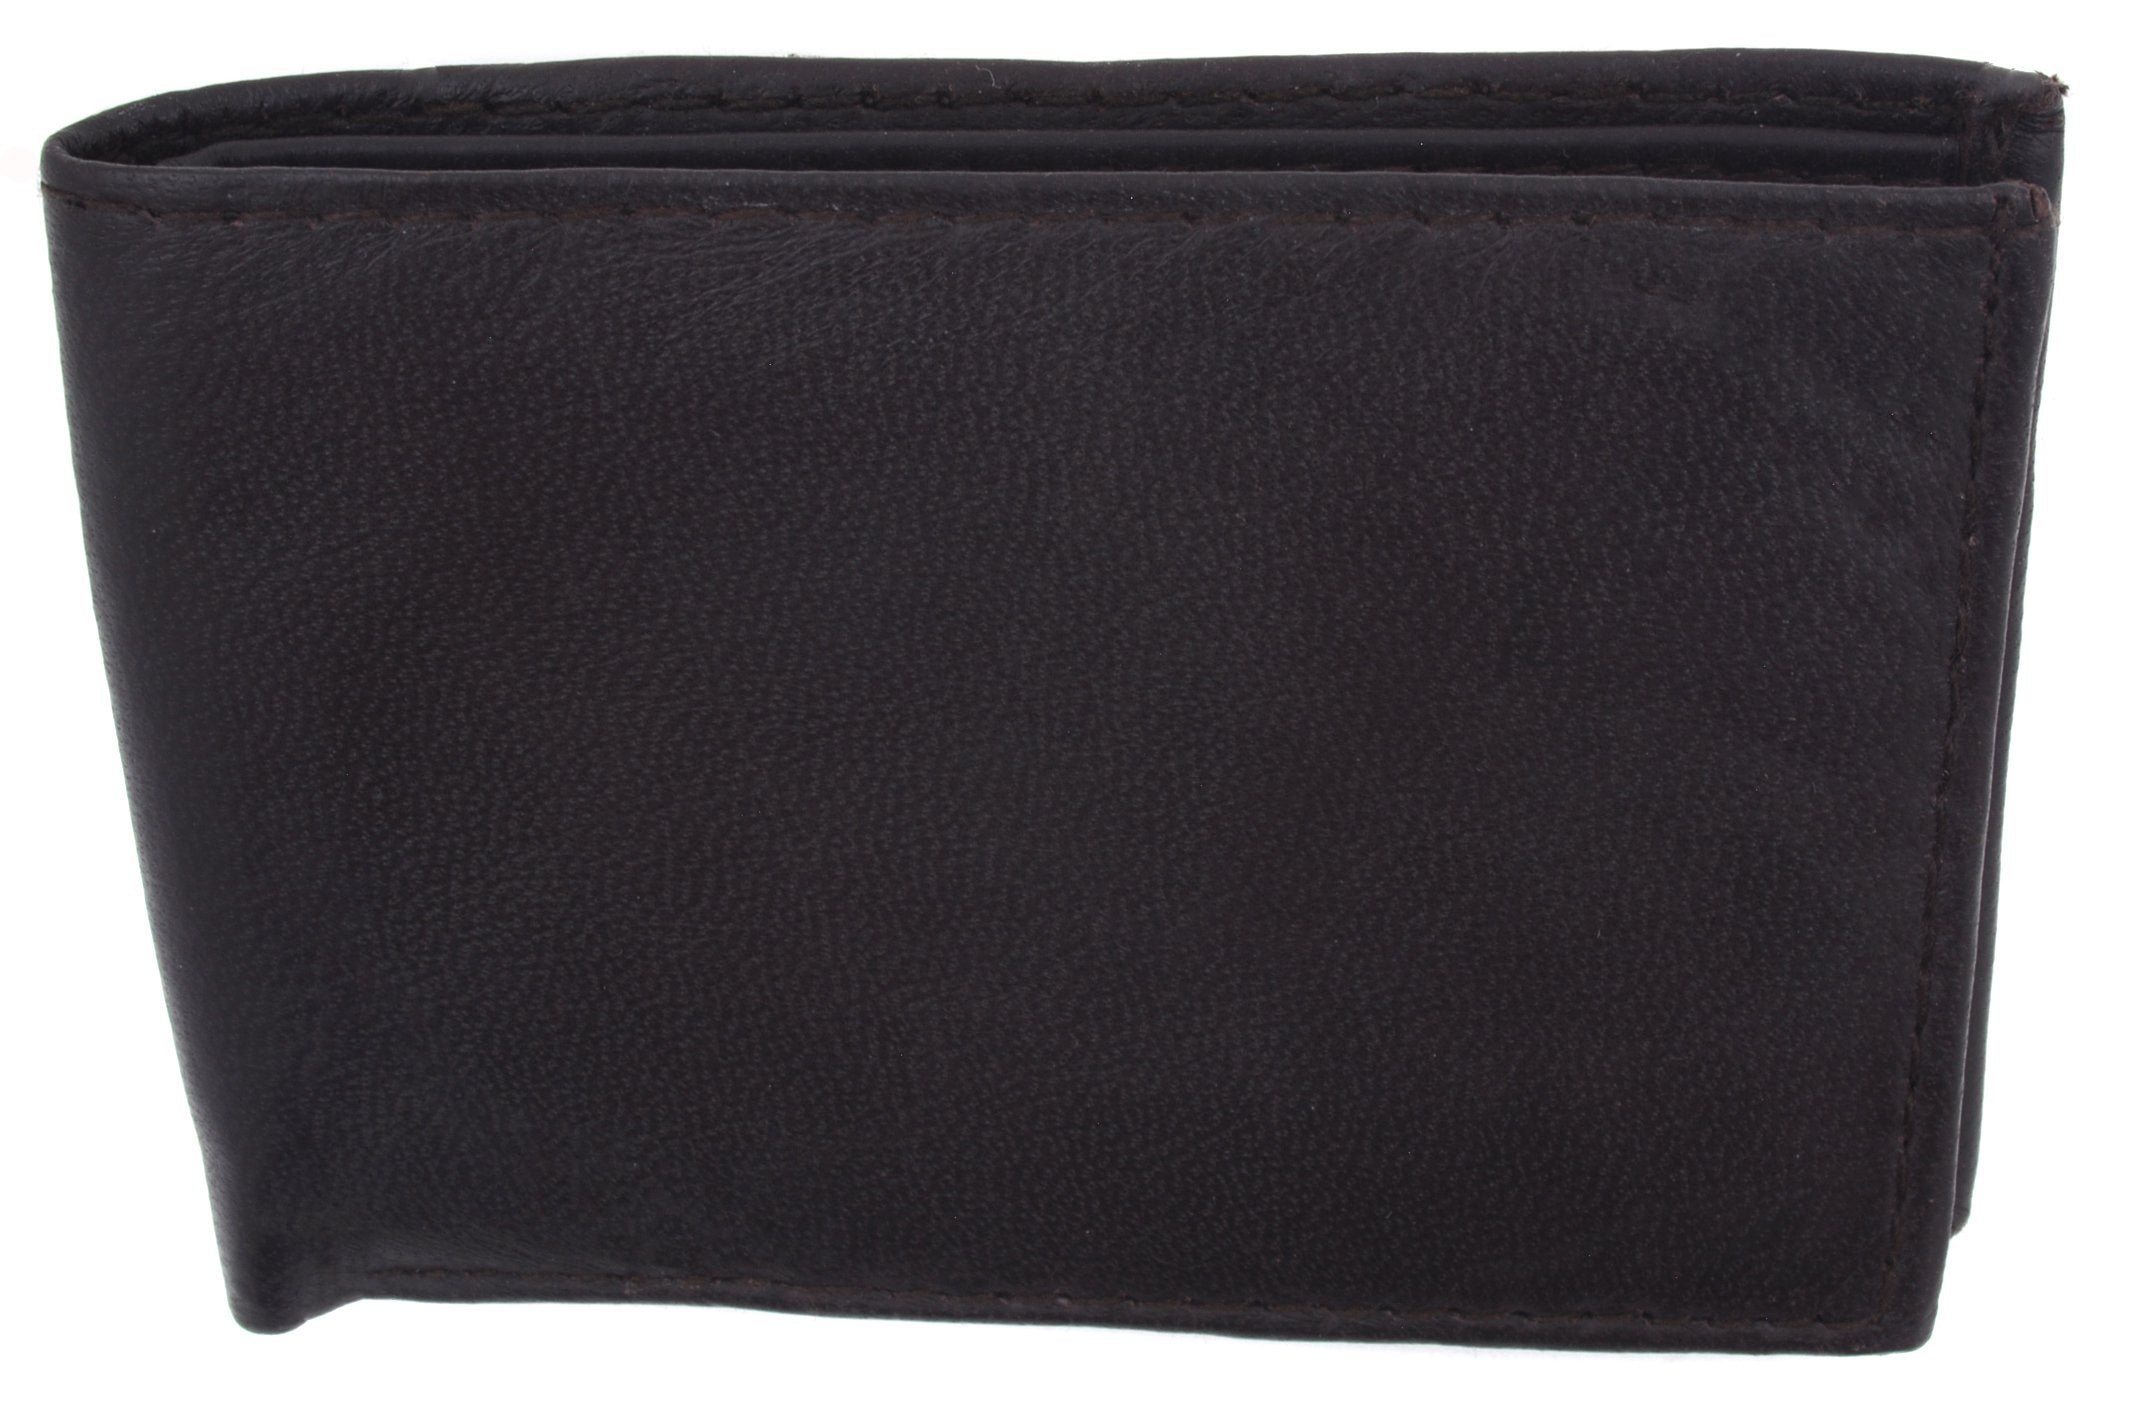 AFONiE Men's Genuine Leather Bi-fold Wallet